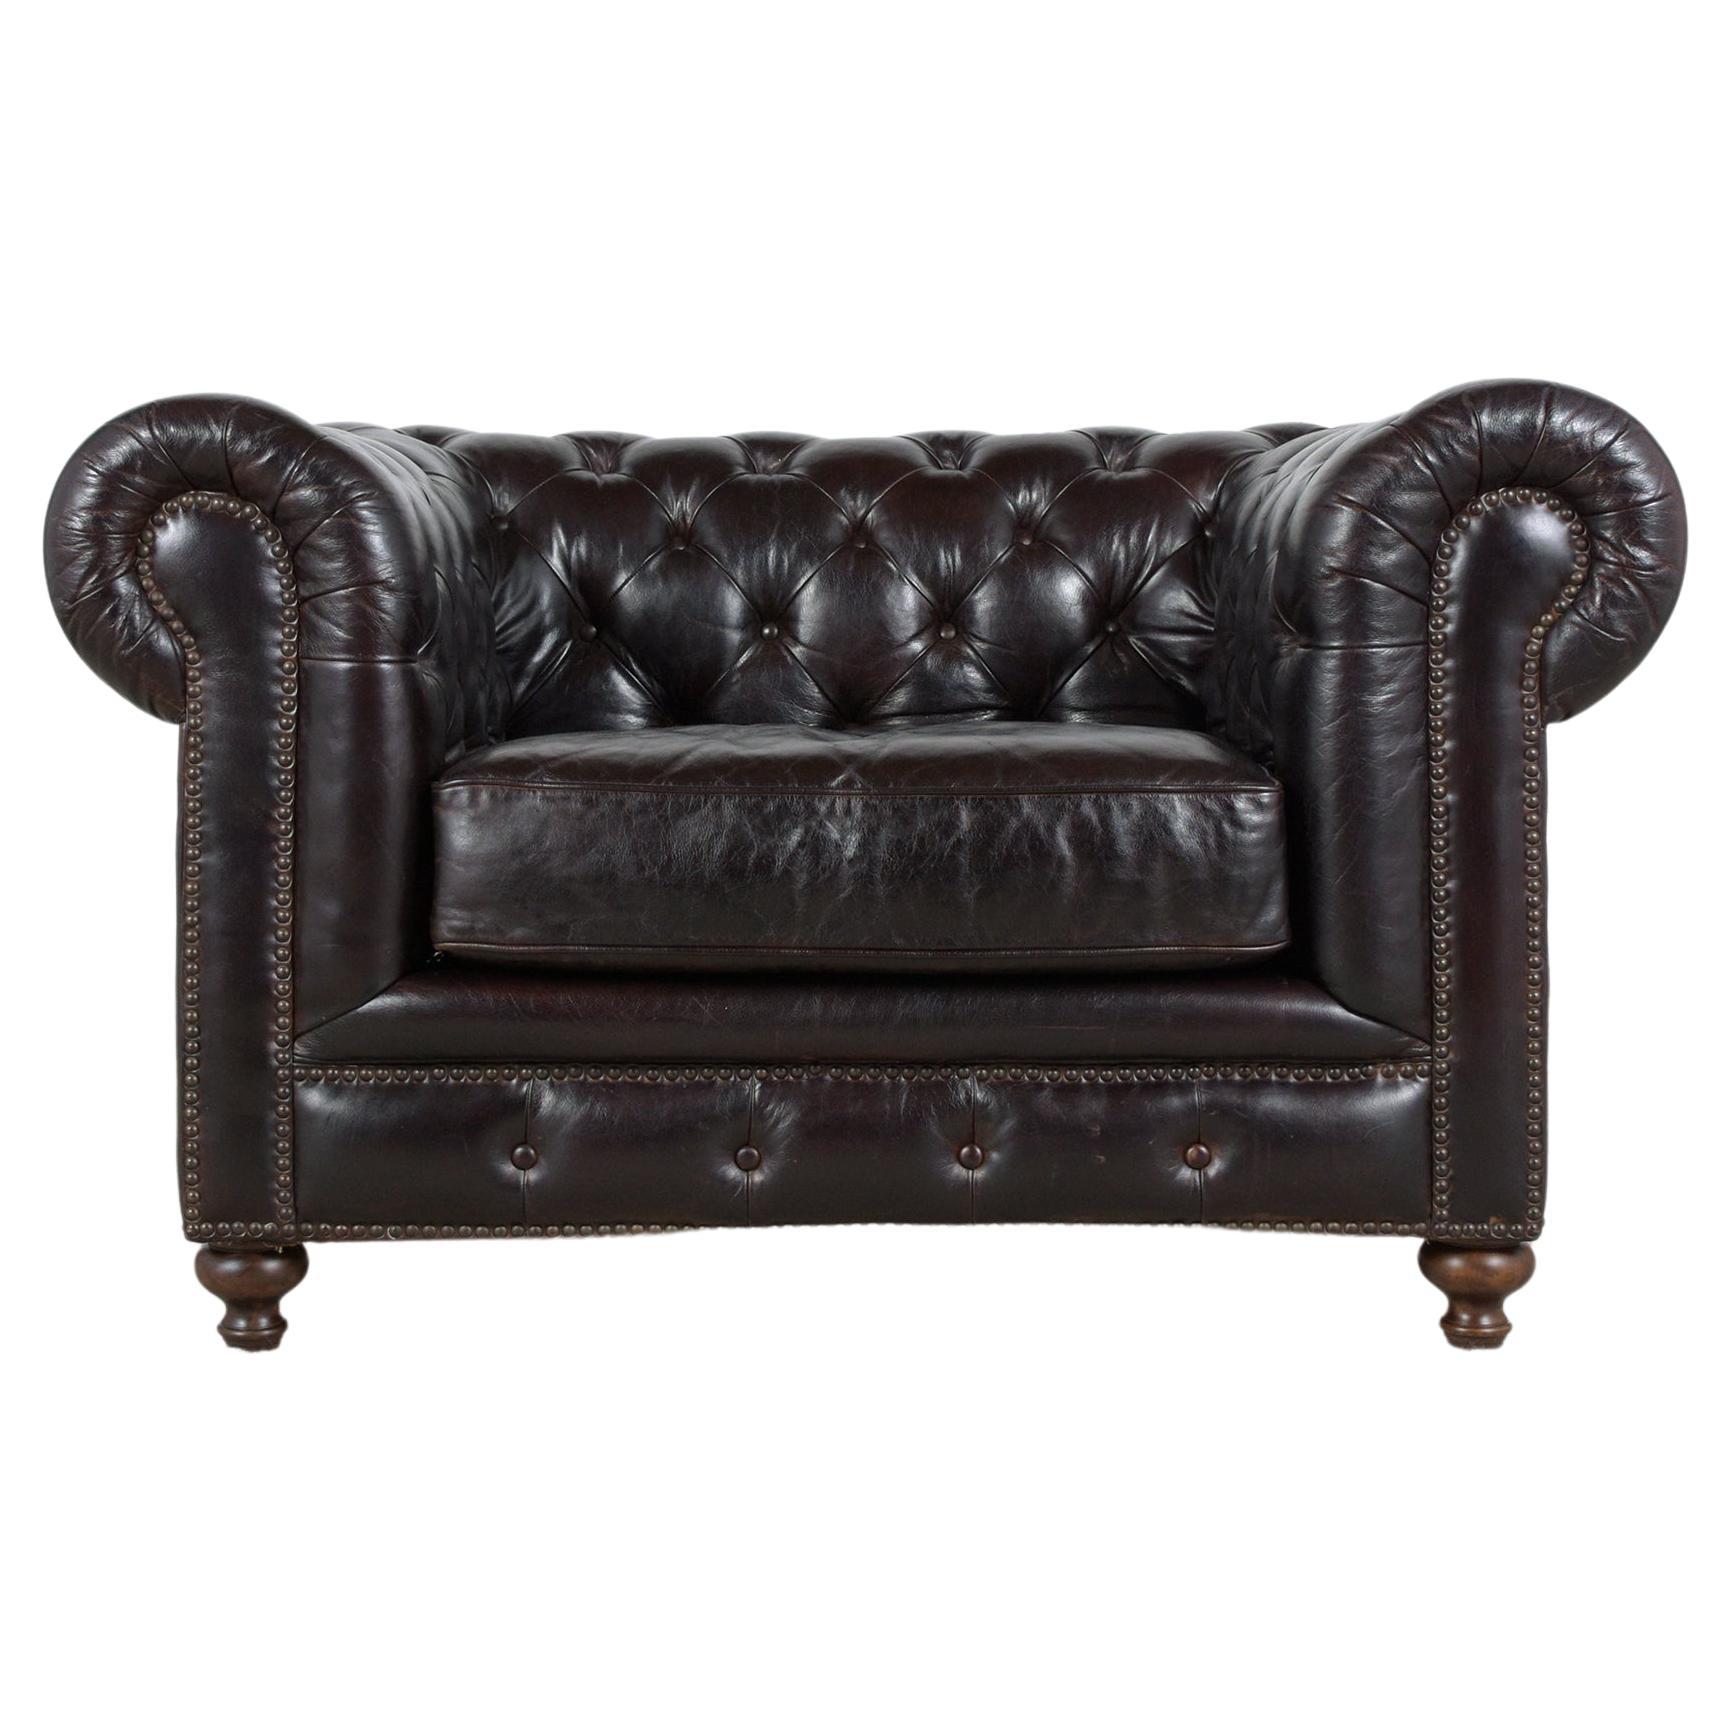 Entrez dans un monde de luxe classique avec notre chaise longue vintage Chesterfield, un meuble qui respire l'élégance et le confort. Datant des années 1980, cette chaise a été méticuleusement restaurée par nos artisans experts, ce qui lui permet